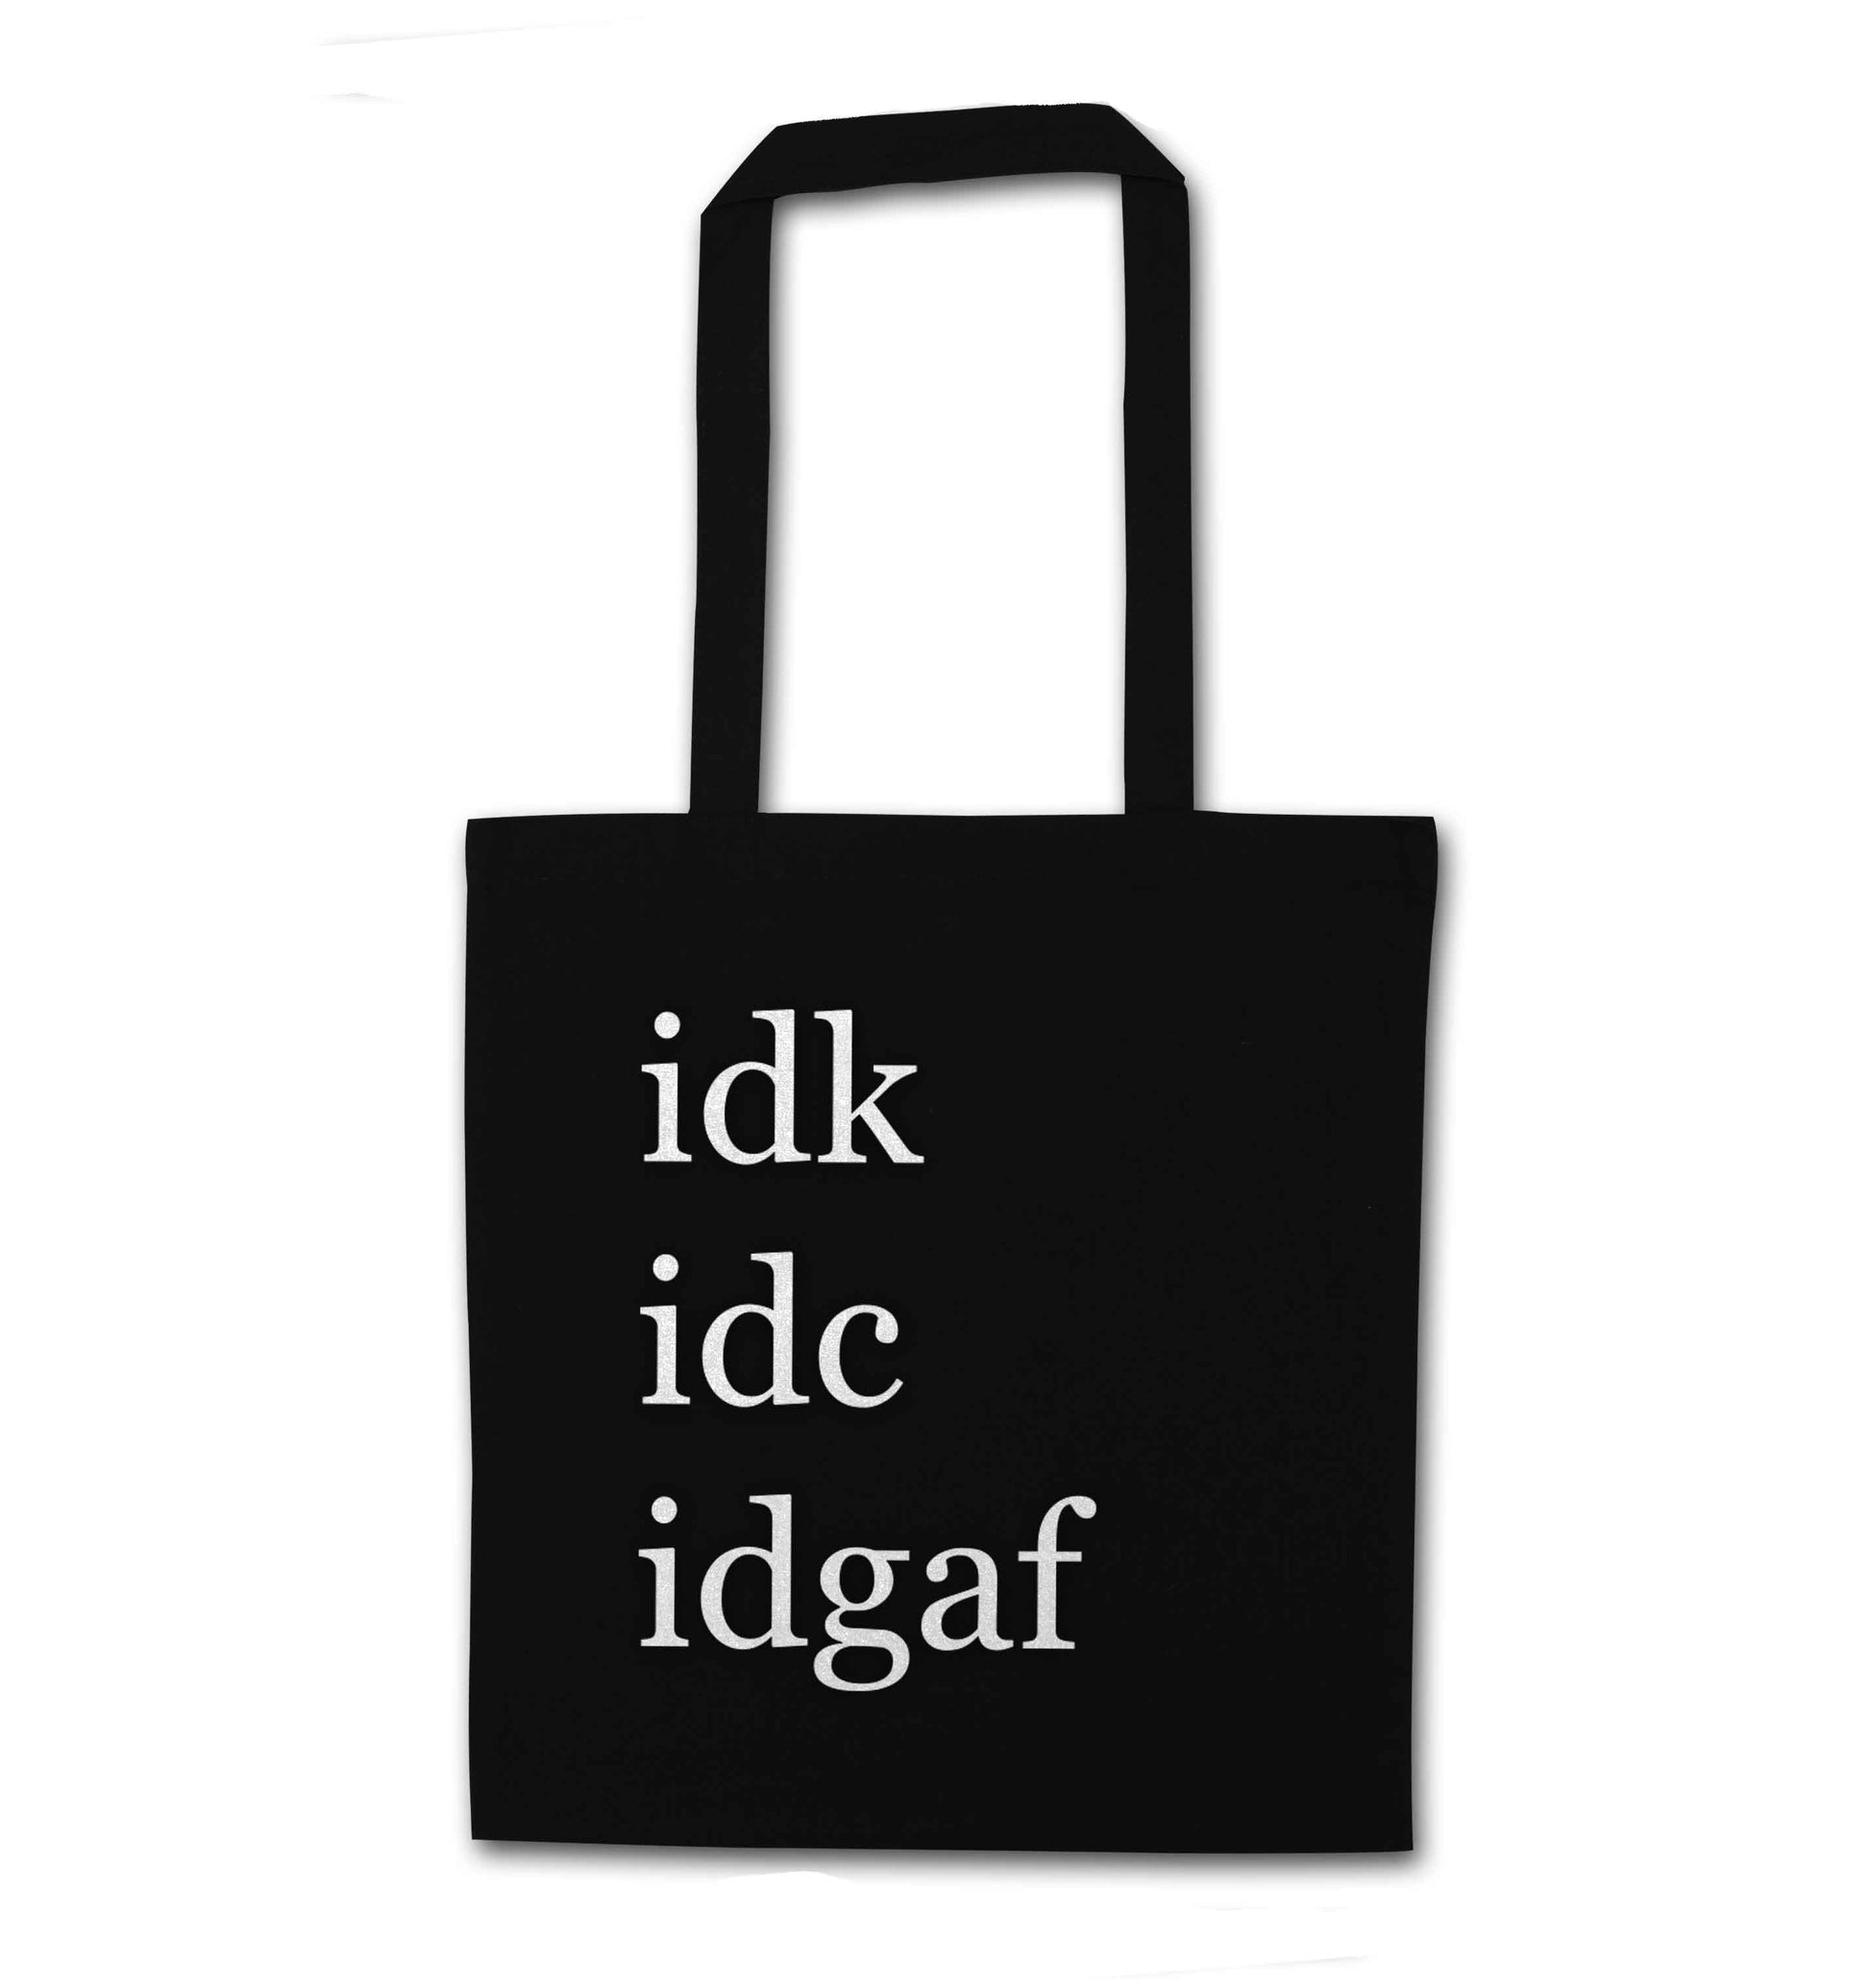 Idk Idc Idgaf black tote bag